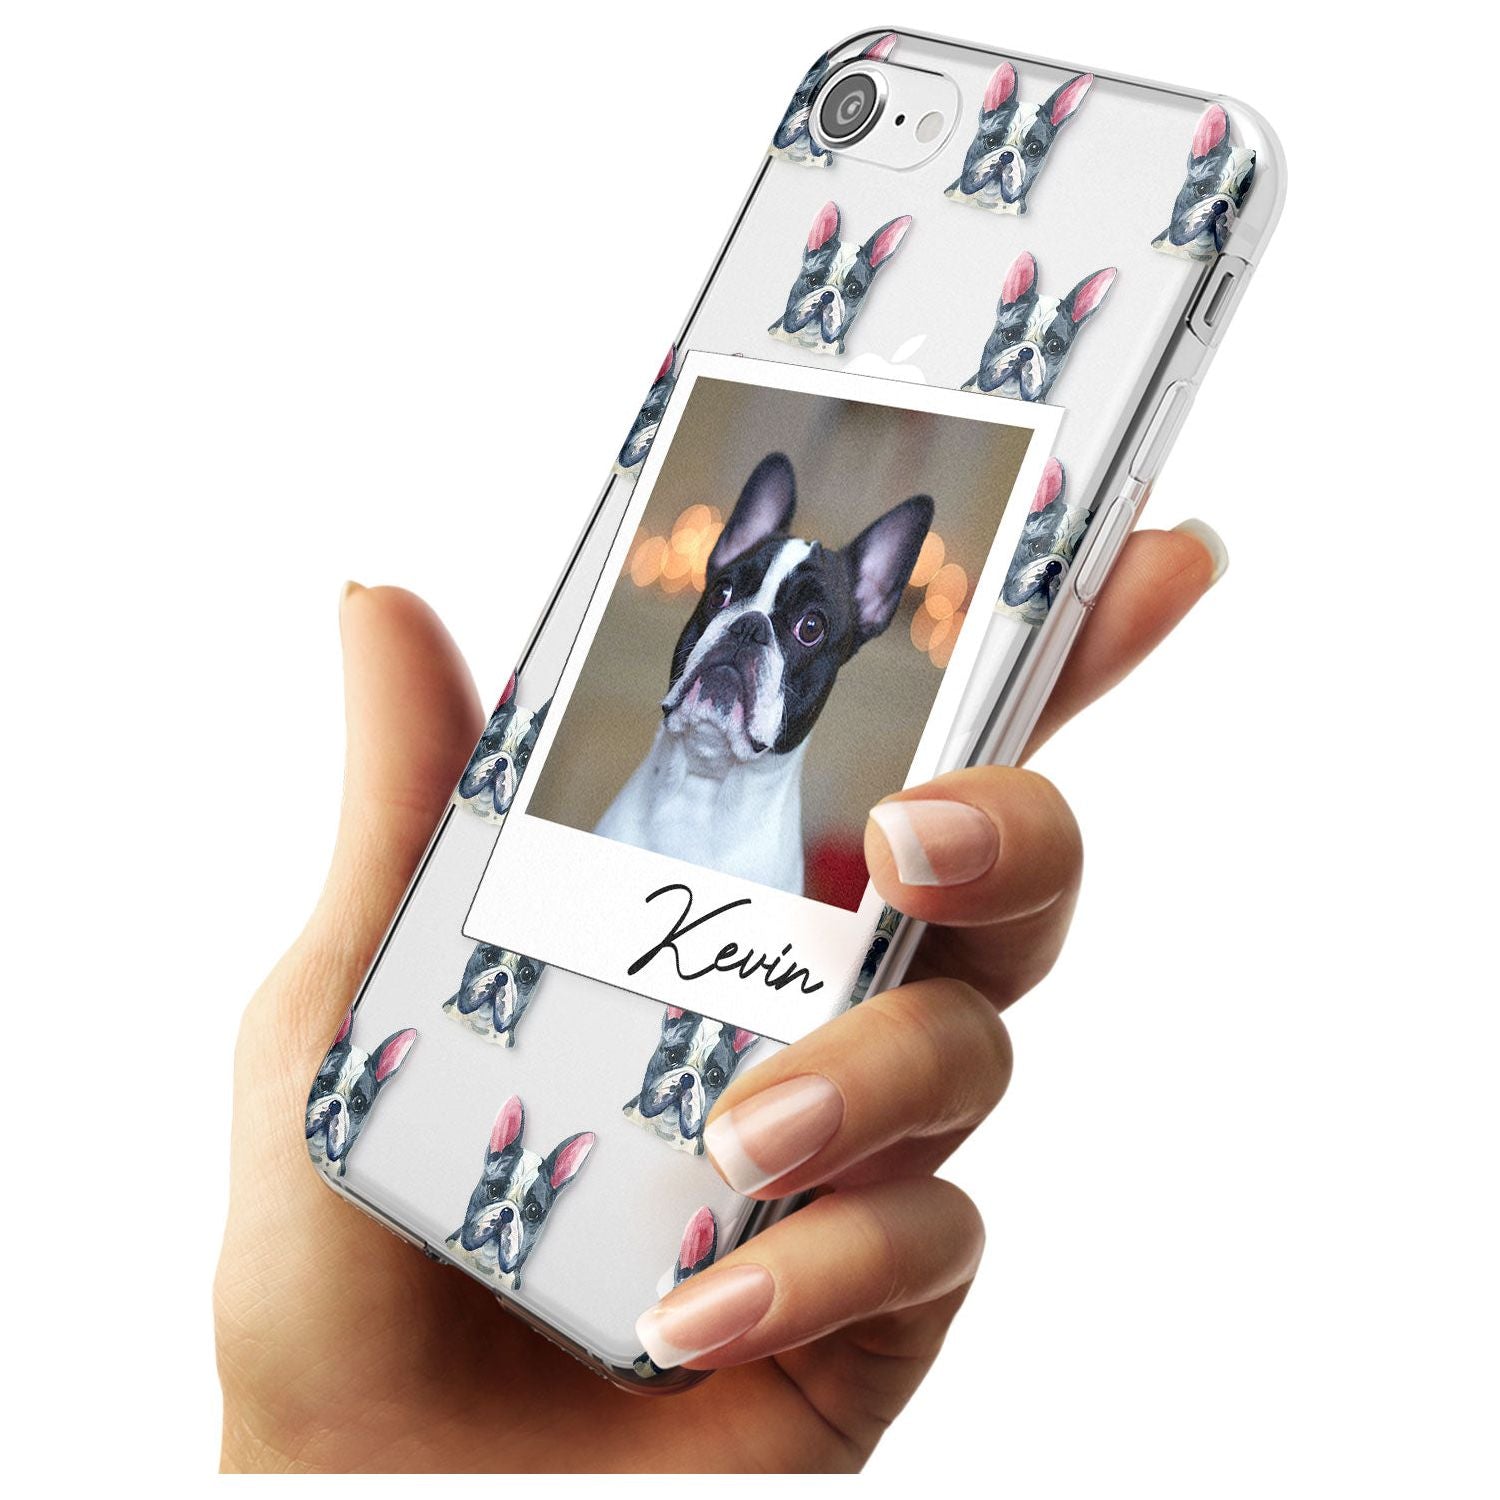 French Bulldog, Black & White - Custom Dog Photo Black Impact Phone Case for iPhone SE 8 7 Plus